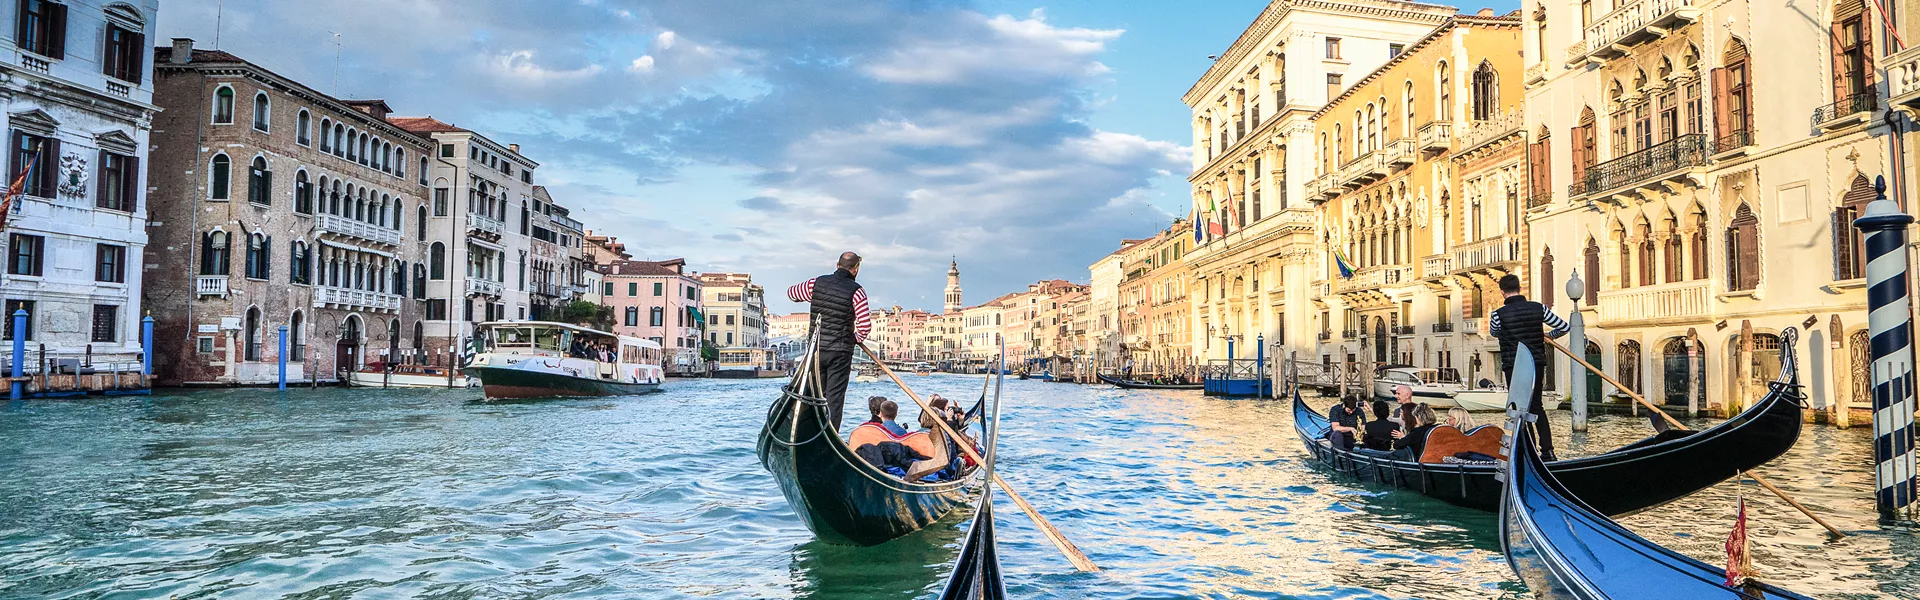 Venice Italy Gondala ride